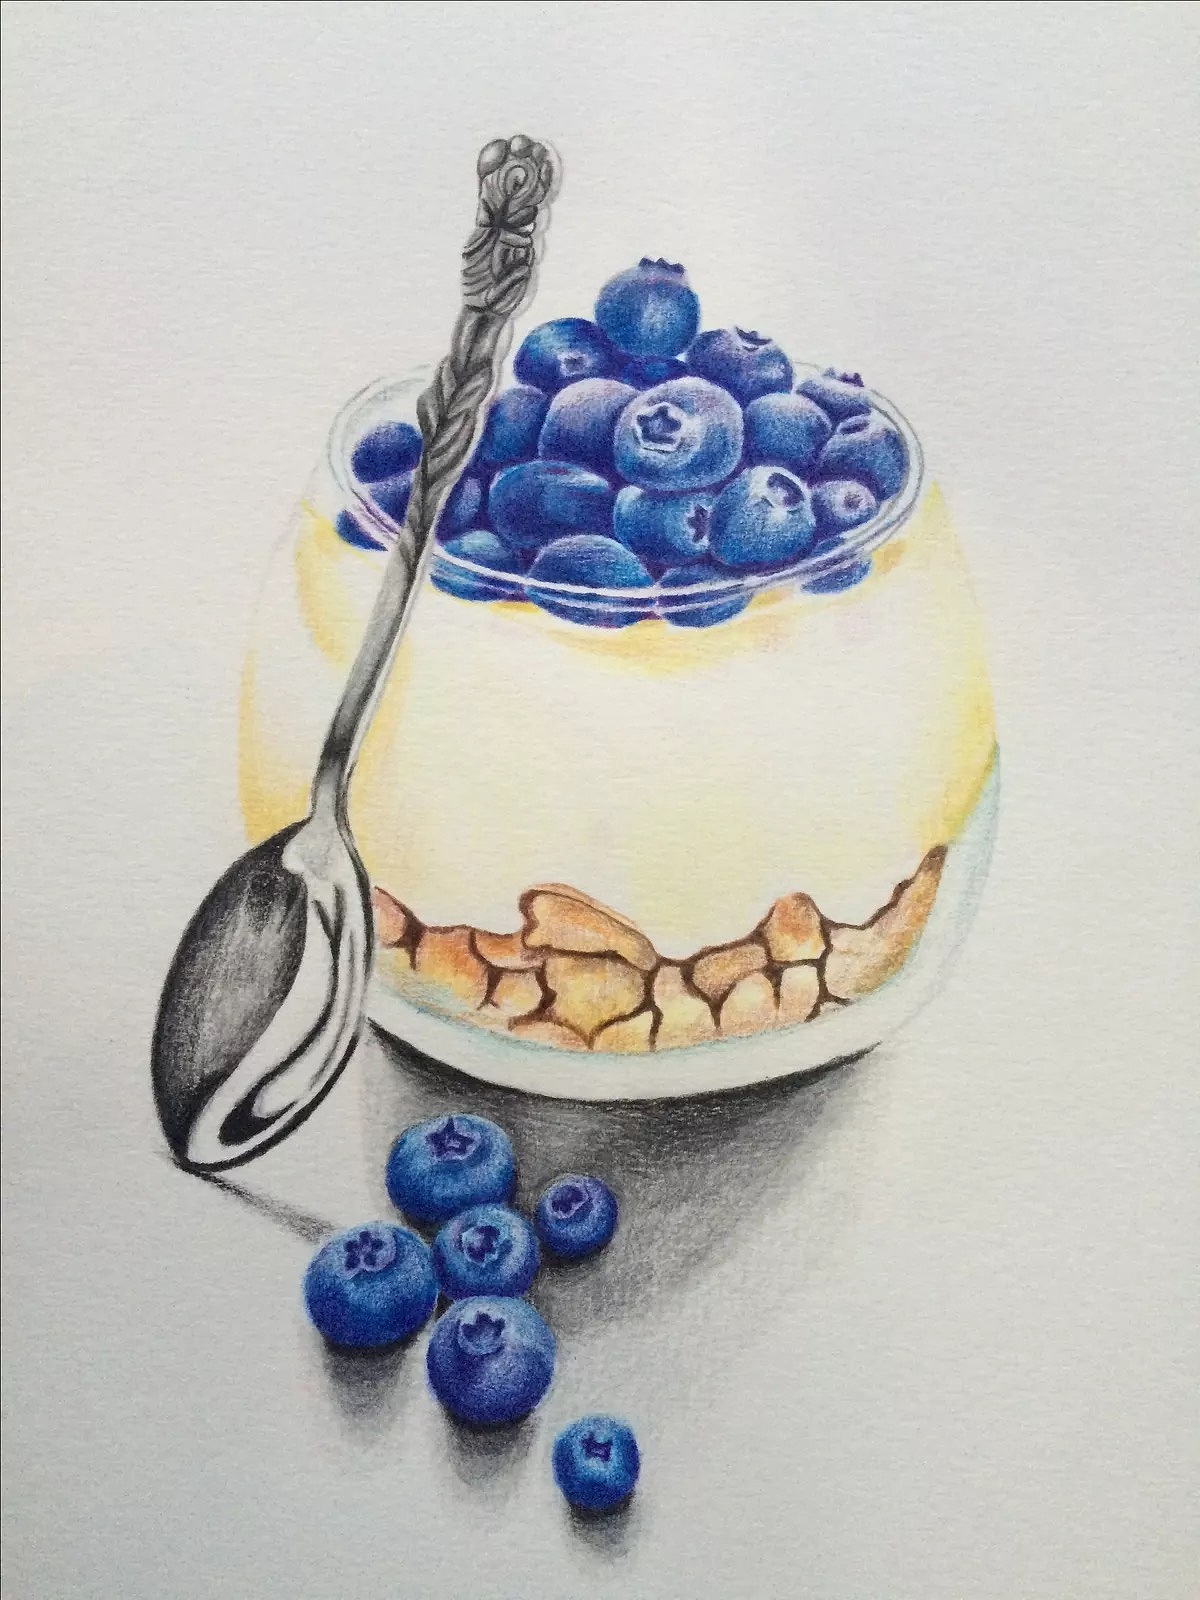 彩铅蓝莓布丁  素材来源于网络照片